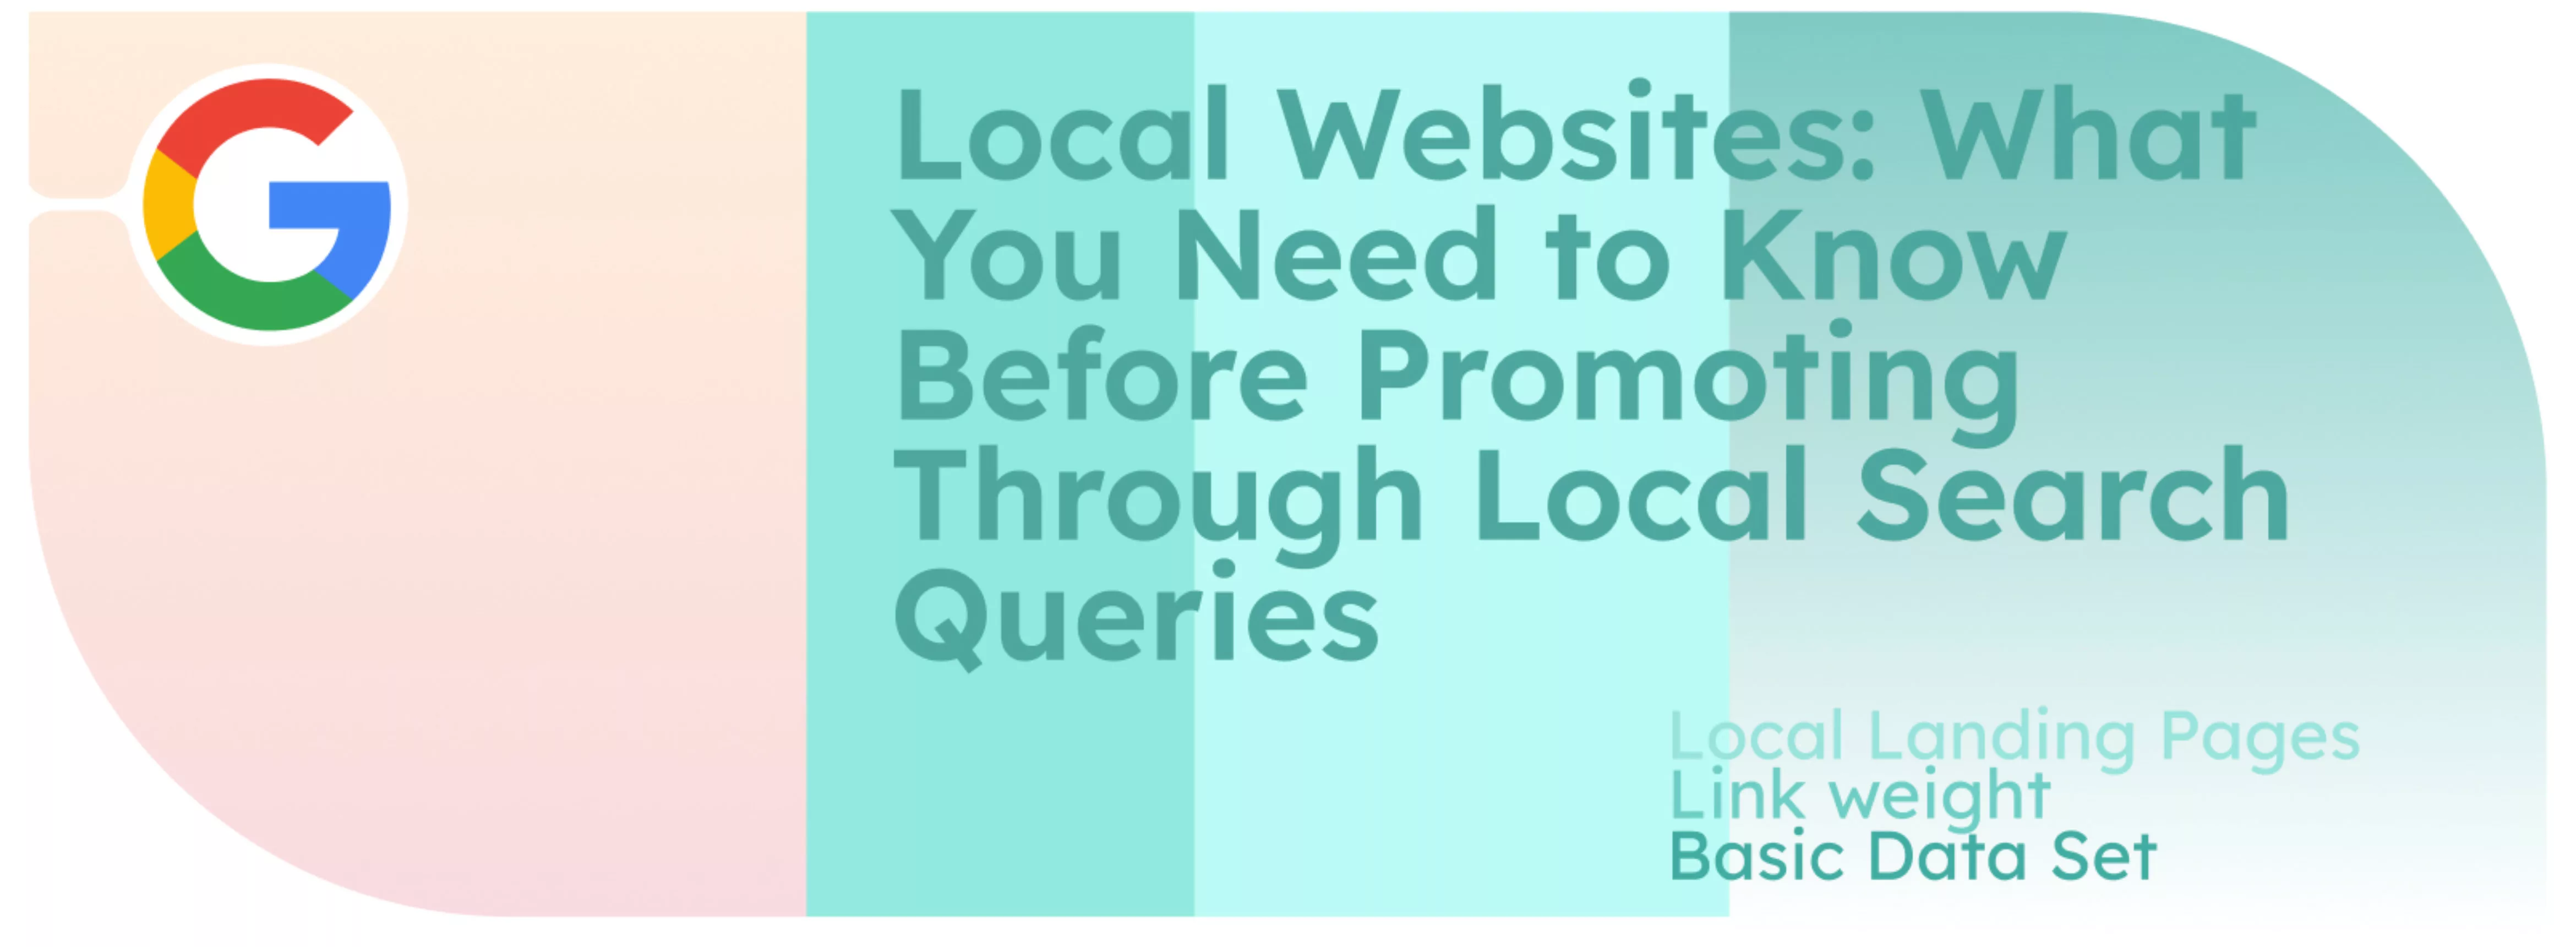 Sitios web locales: Lo que hay que saber antes de promocionarse a través de búsquedas locales